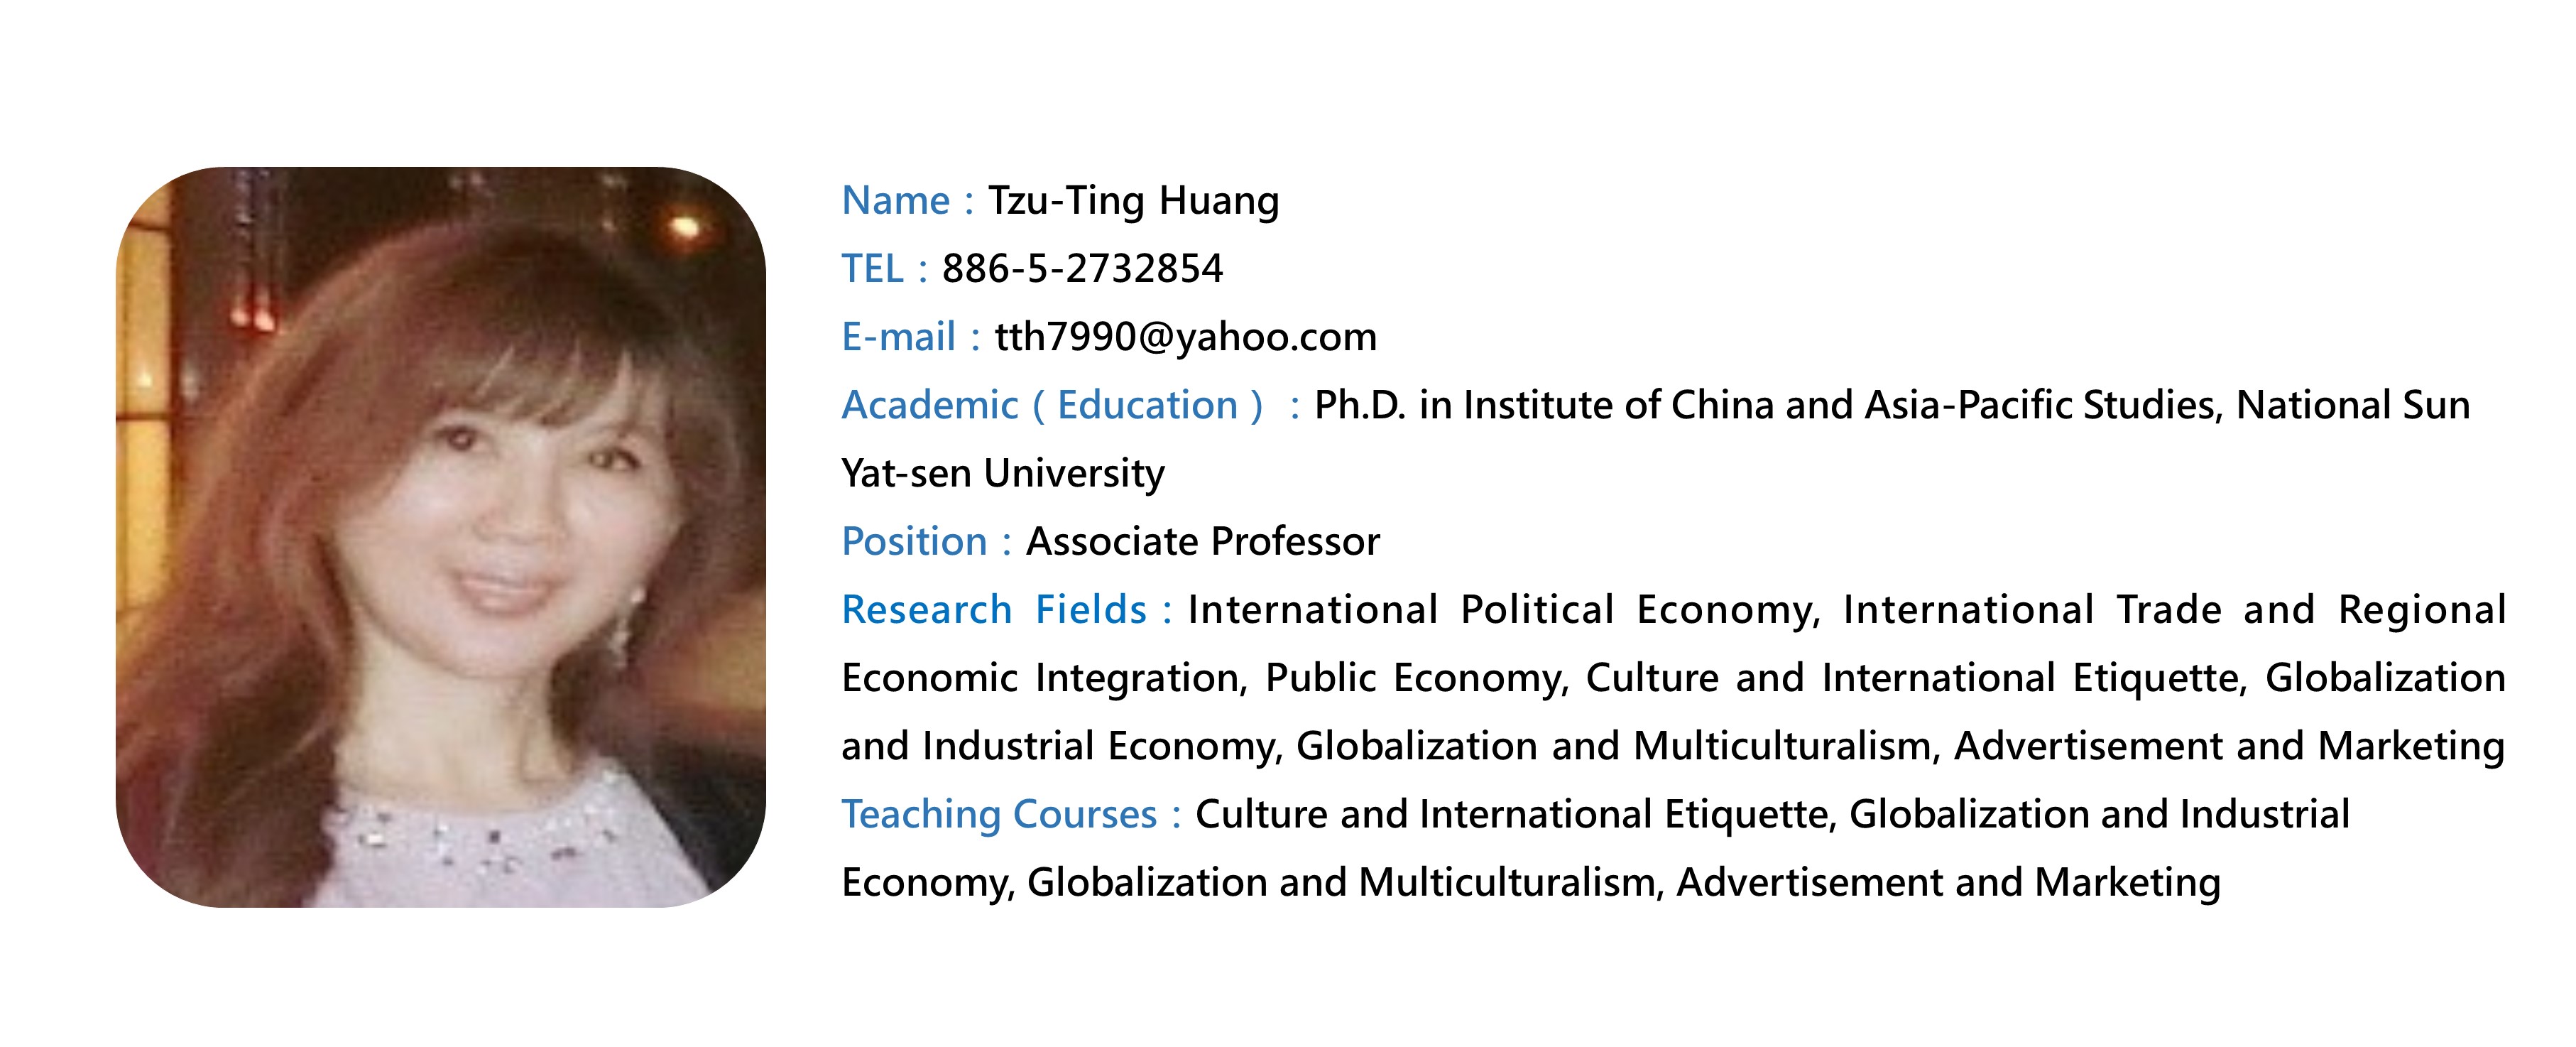 Tzu-Ting Huang